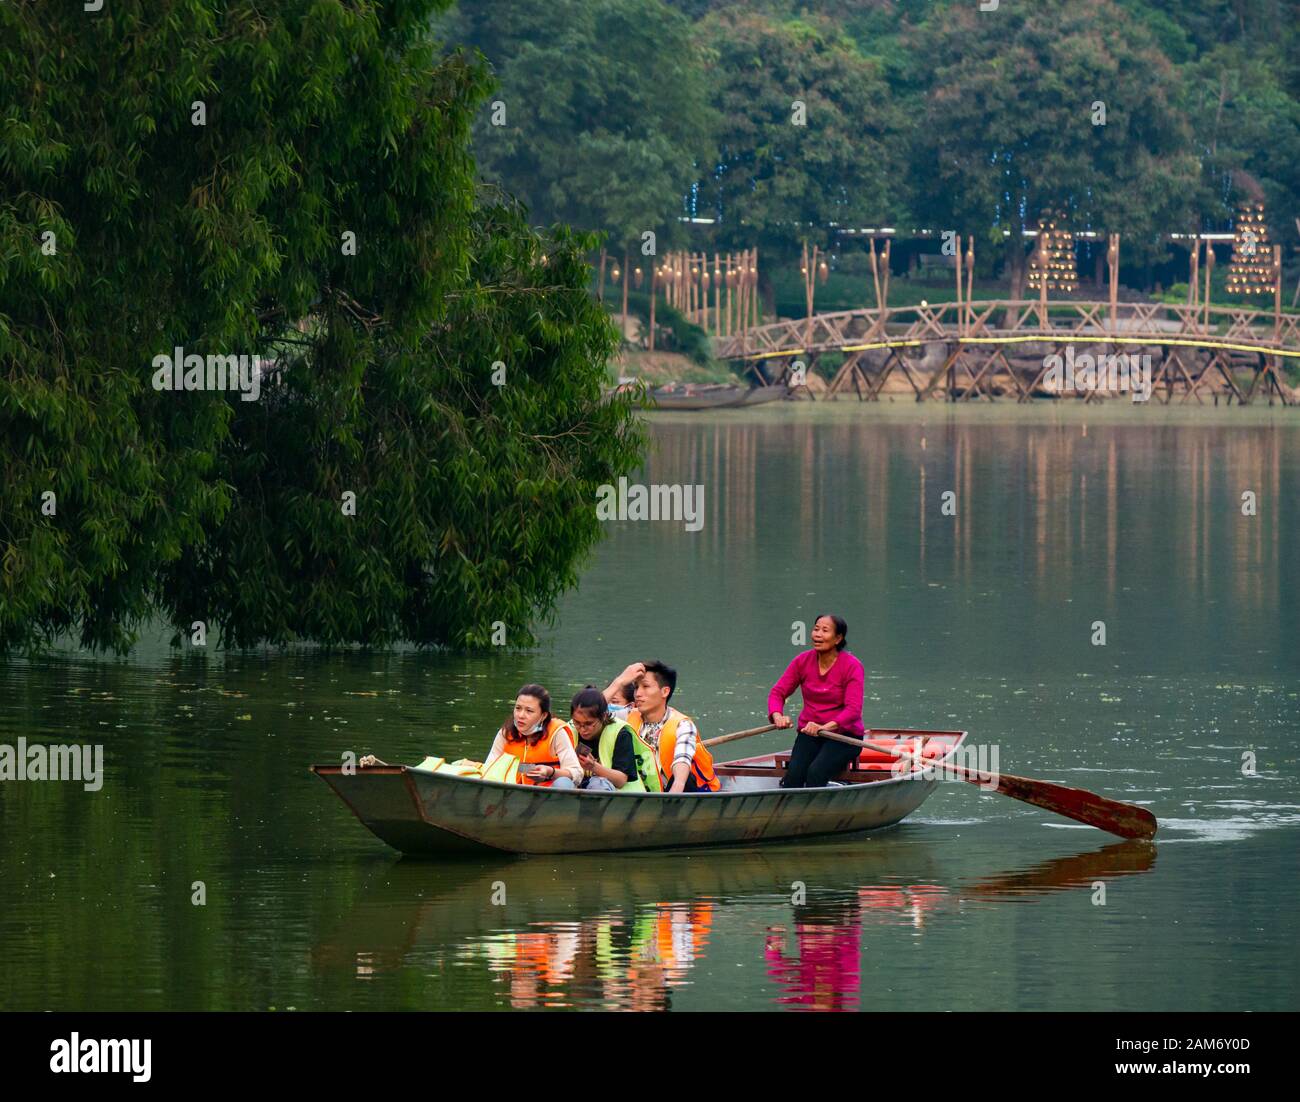 Local woman rowing group of Asian tourists in sampan, Thung Nham Bird Park, Tam Coc, Ninh Binh, Vietnam, Asia Stock Photo